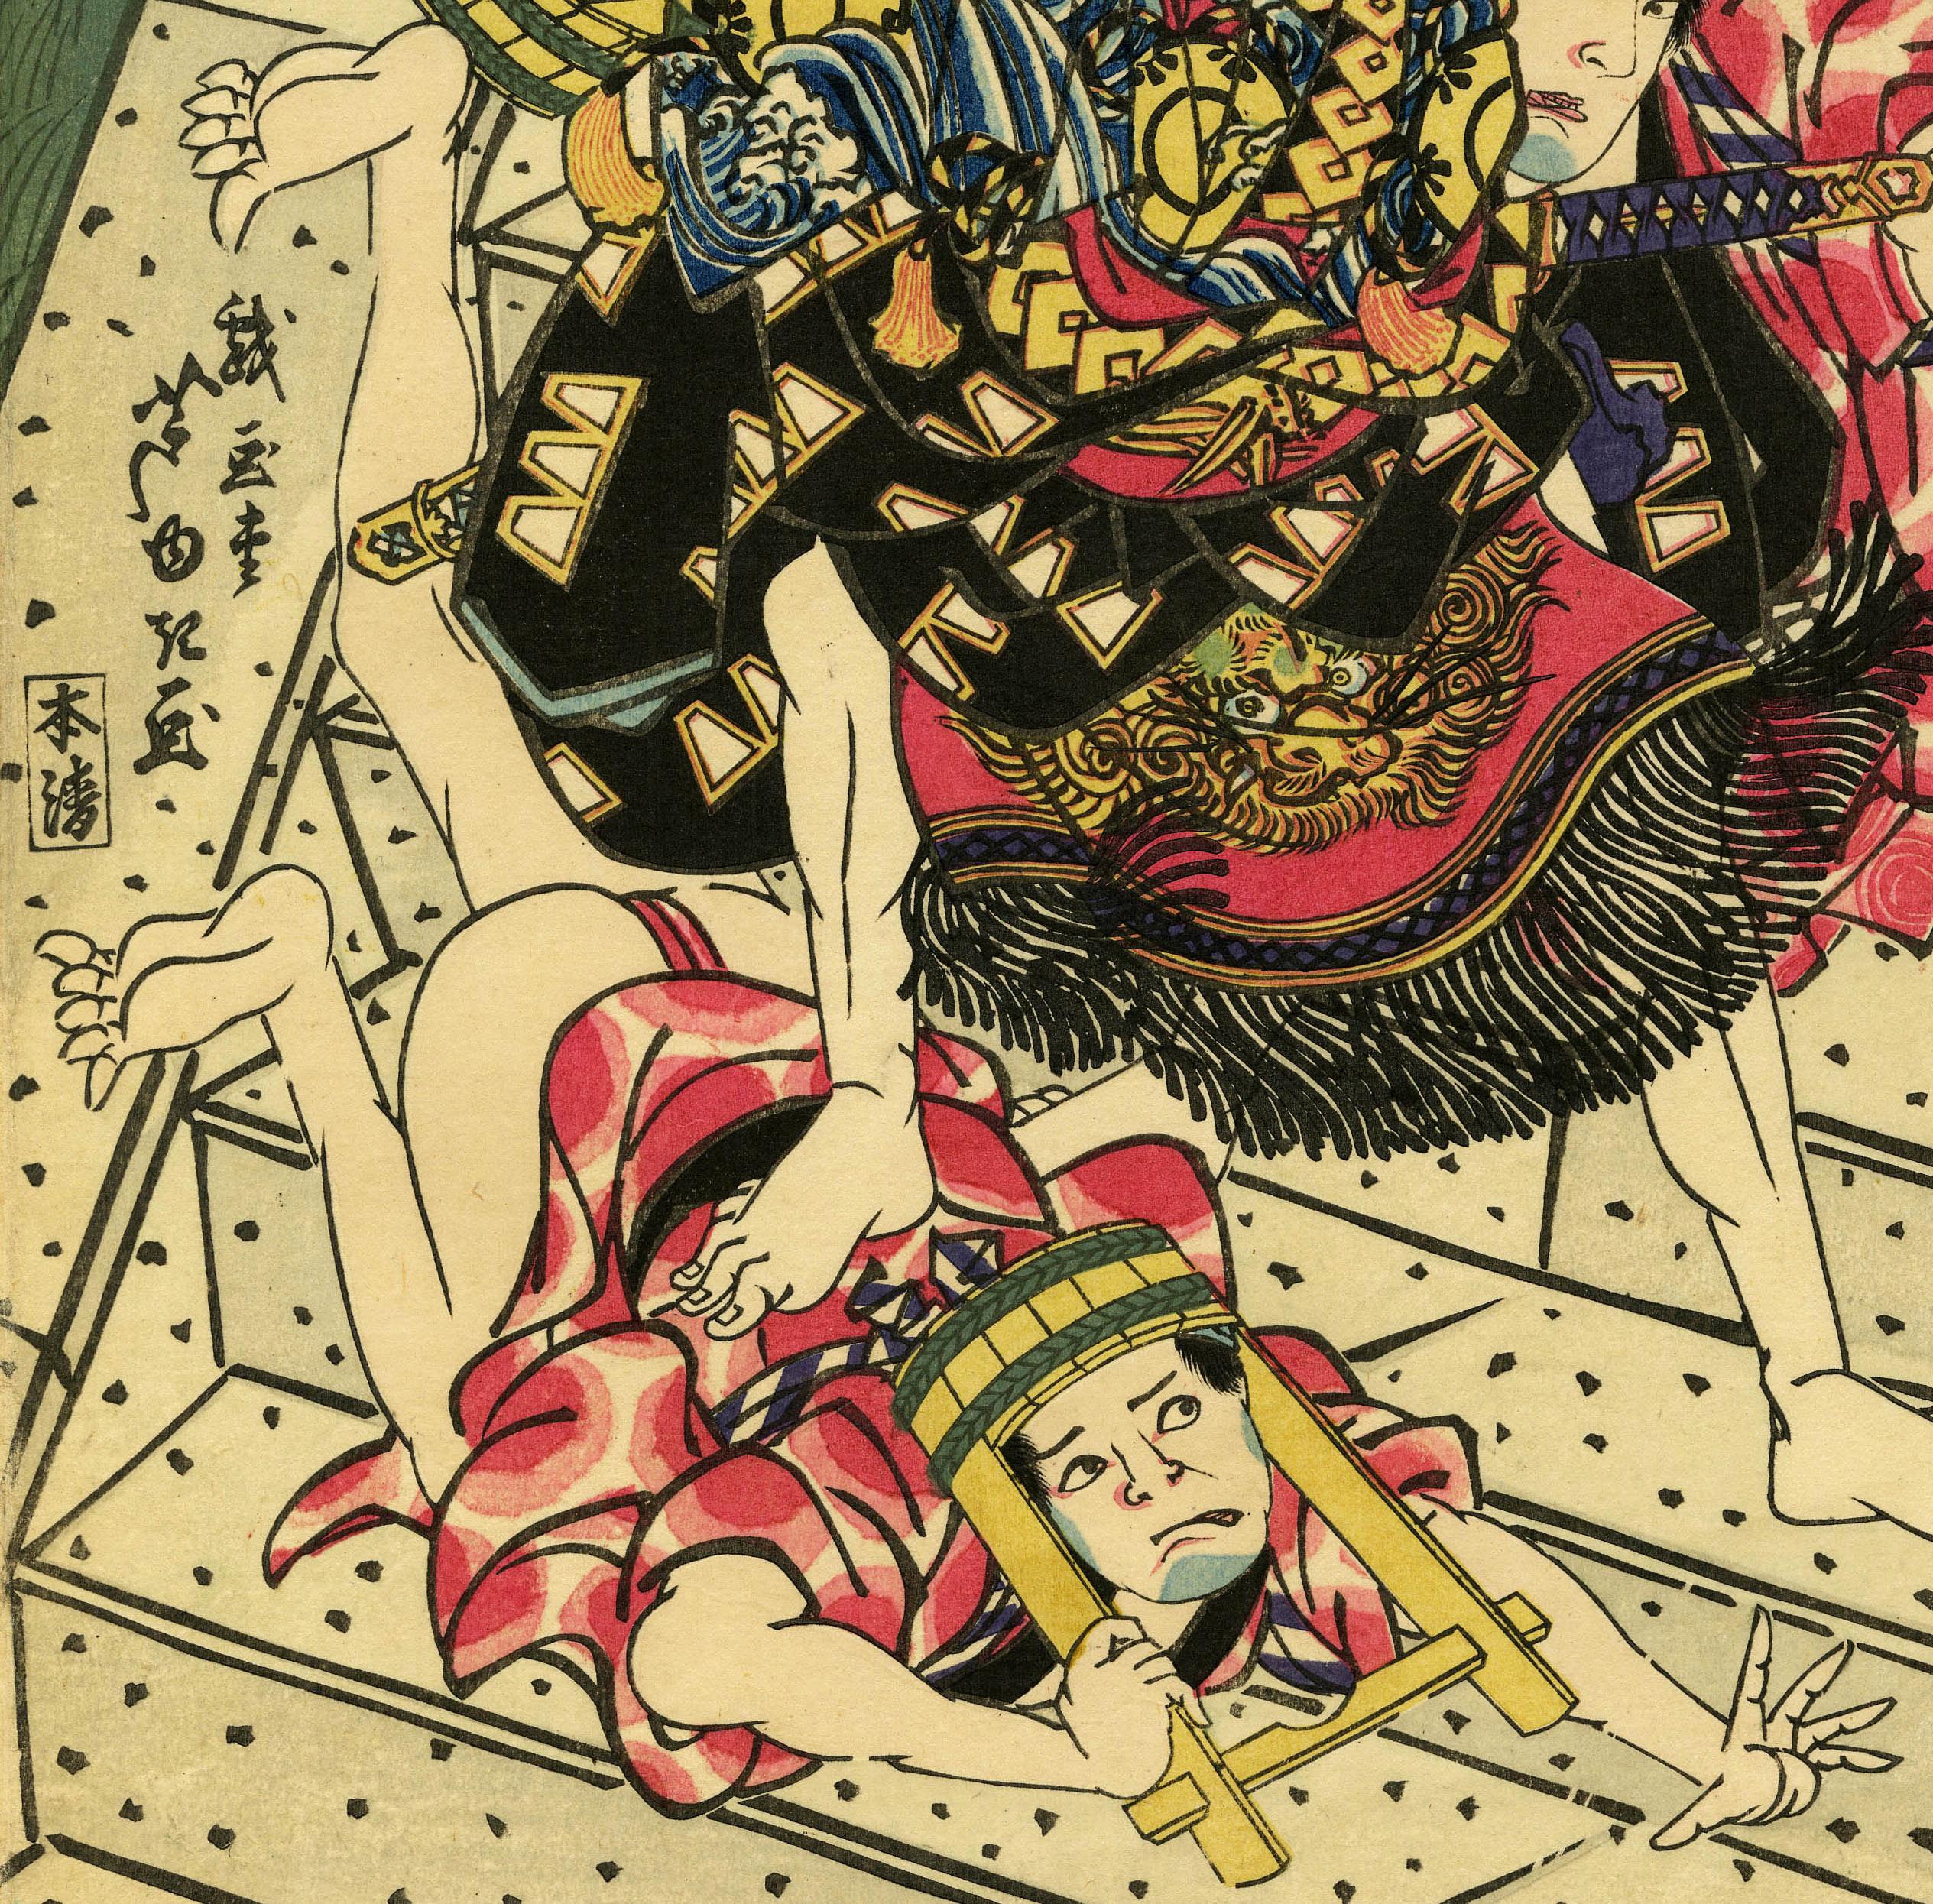 Arashi Rikan II dans une scène Kabuki d'Osaka
Gravure sur bois en couleur, C.C. 1827
Signé au milieu à gauche (voir photo)
Titre en haut à gauche (voir photo)
Format : oban
Éditeur : Honsei
L'acteur, dans son personnage, élimine trois voleurs sur